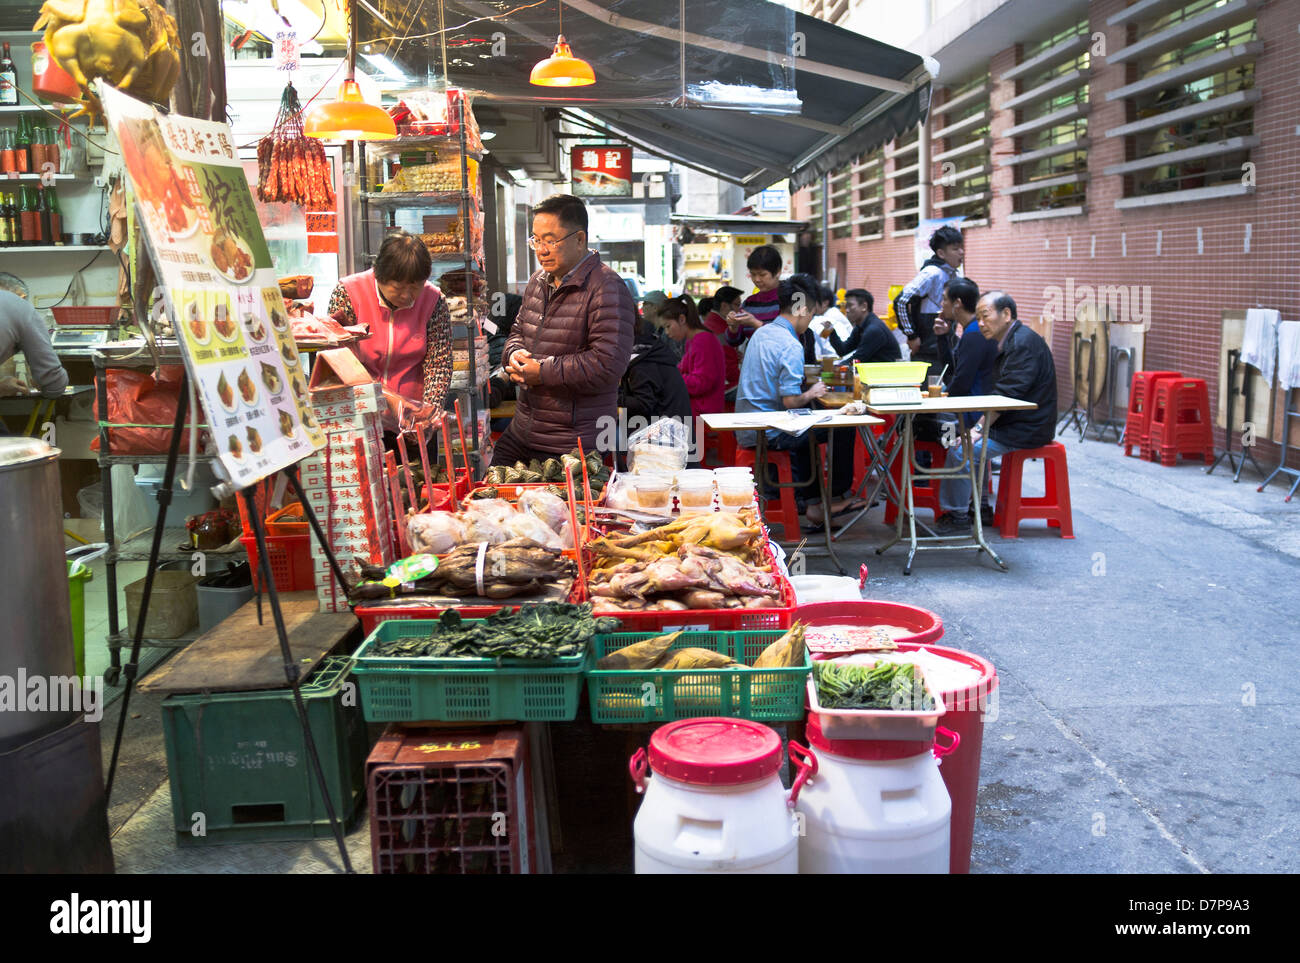 dh CAUSEWAY BAY HONG KONG Street café Chinois manger à l'extérieur Backstreet marché alimentaire asie chine Alley personnes dîner cantonais locaux Banque D'Images